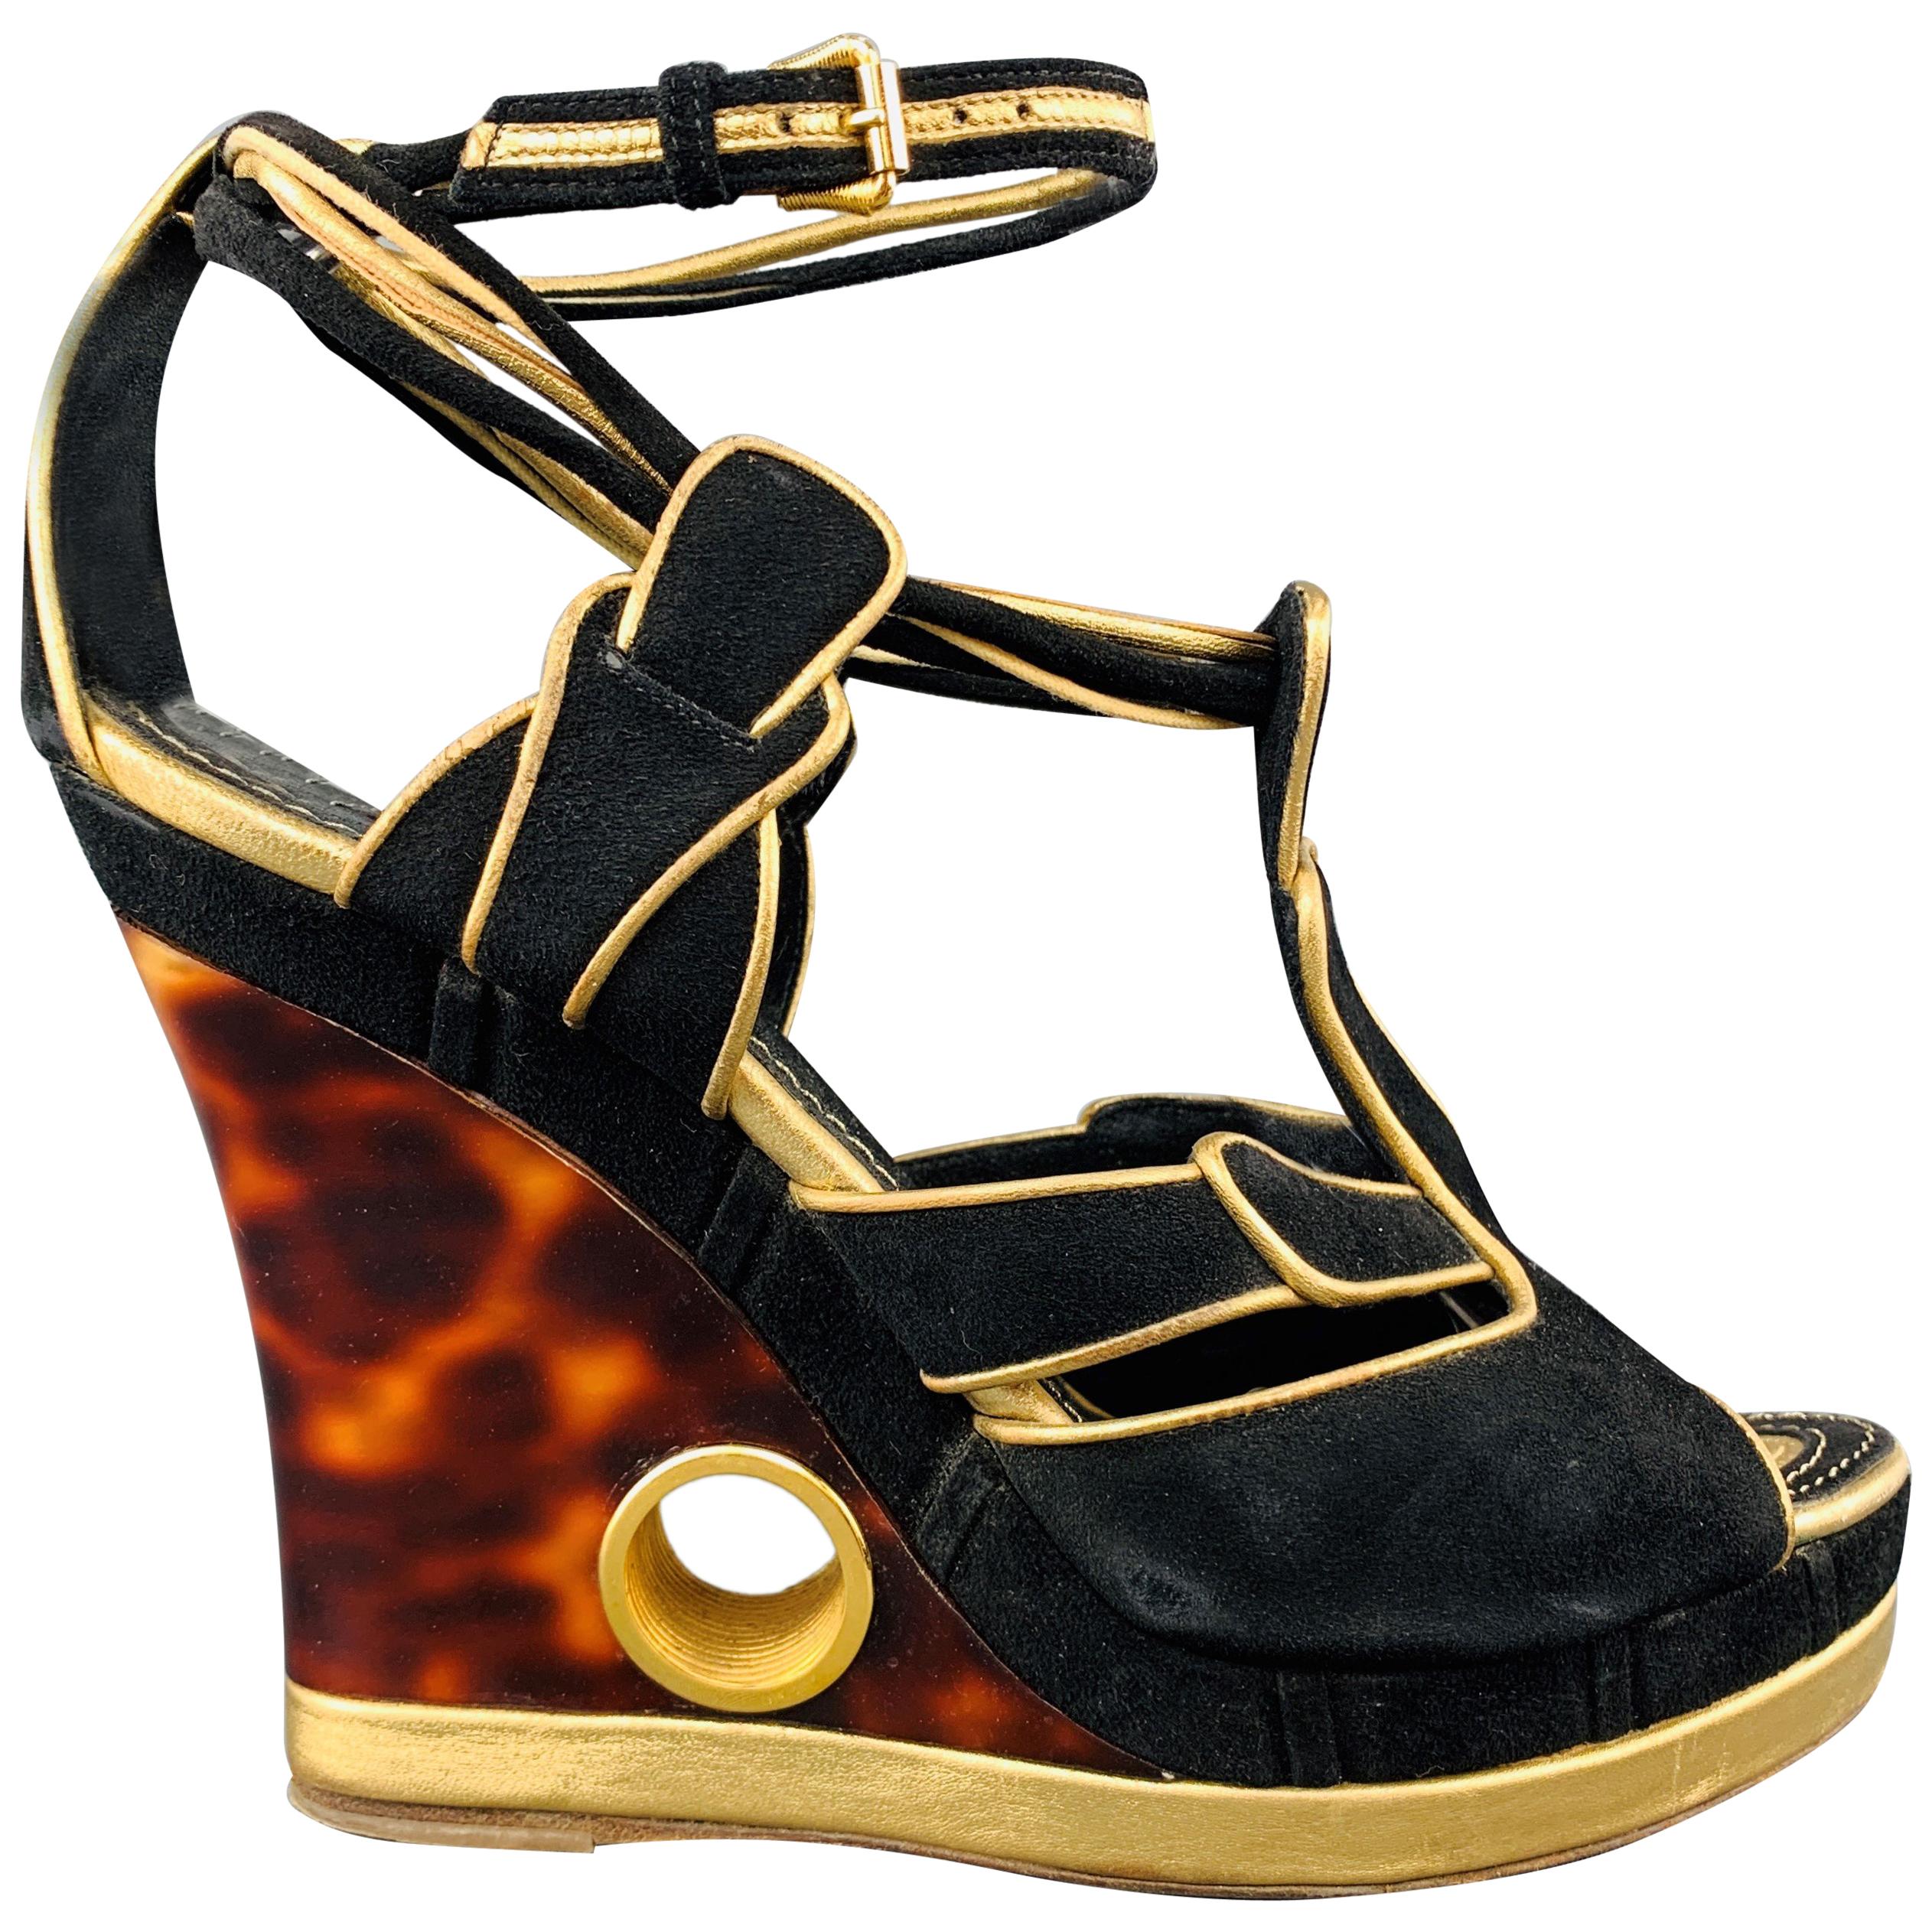 LOUIS VUITTON Size 7 Black & Gold Suede Faux Tort Wedge Platform Sandals